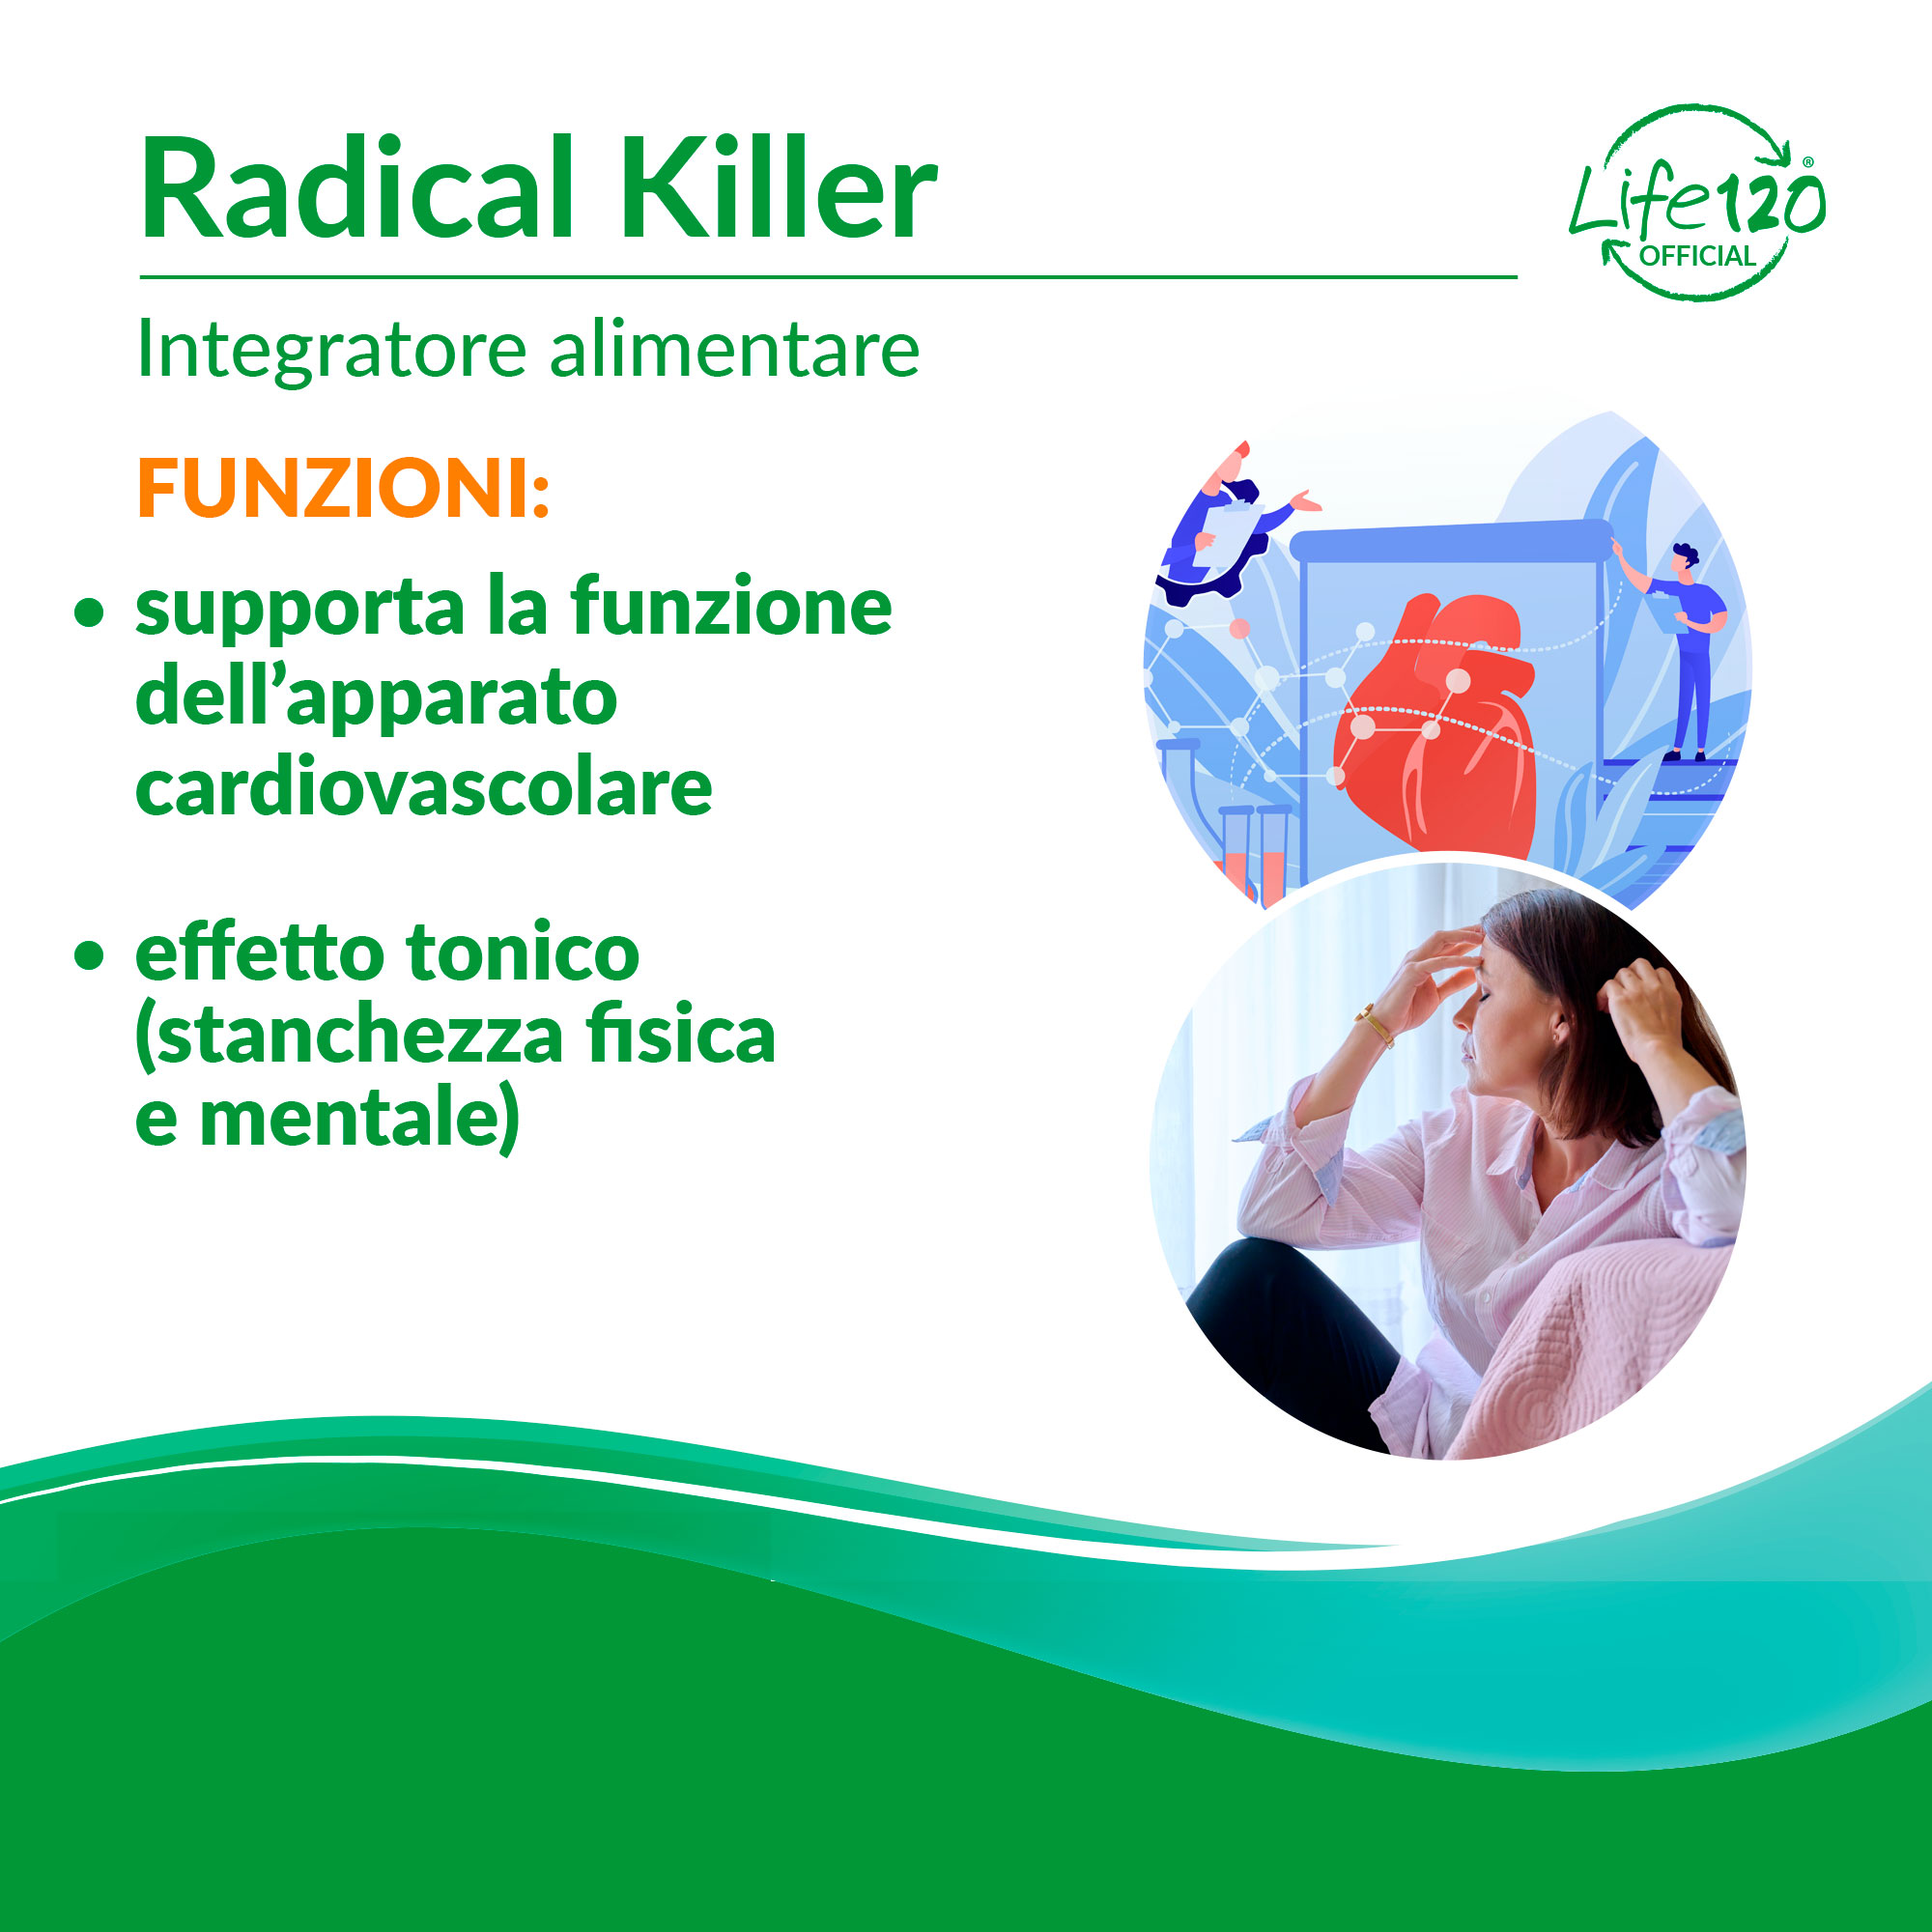 Radical Killer